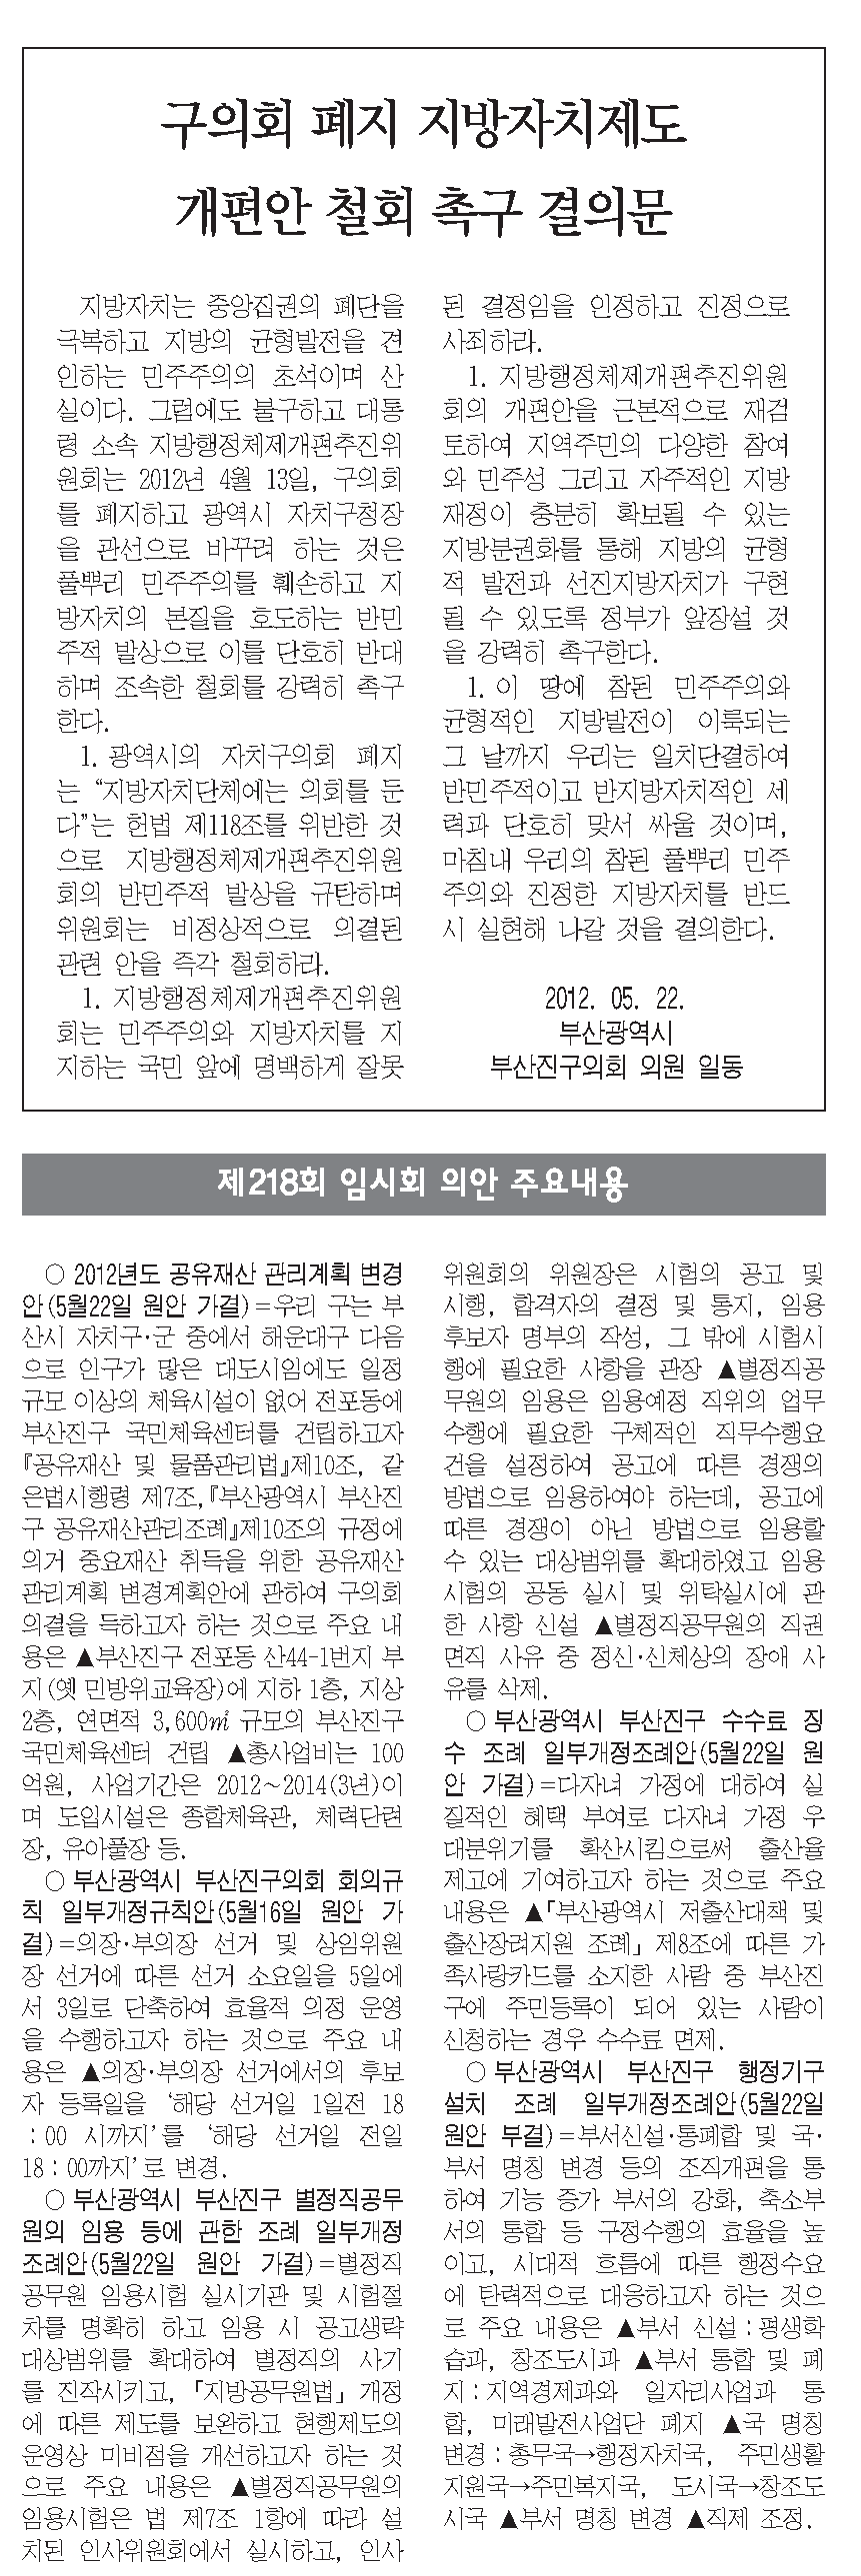 부산진구신문(183호)